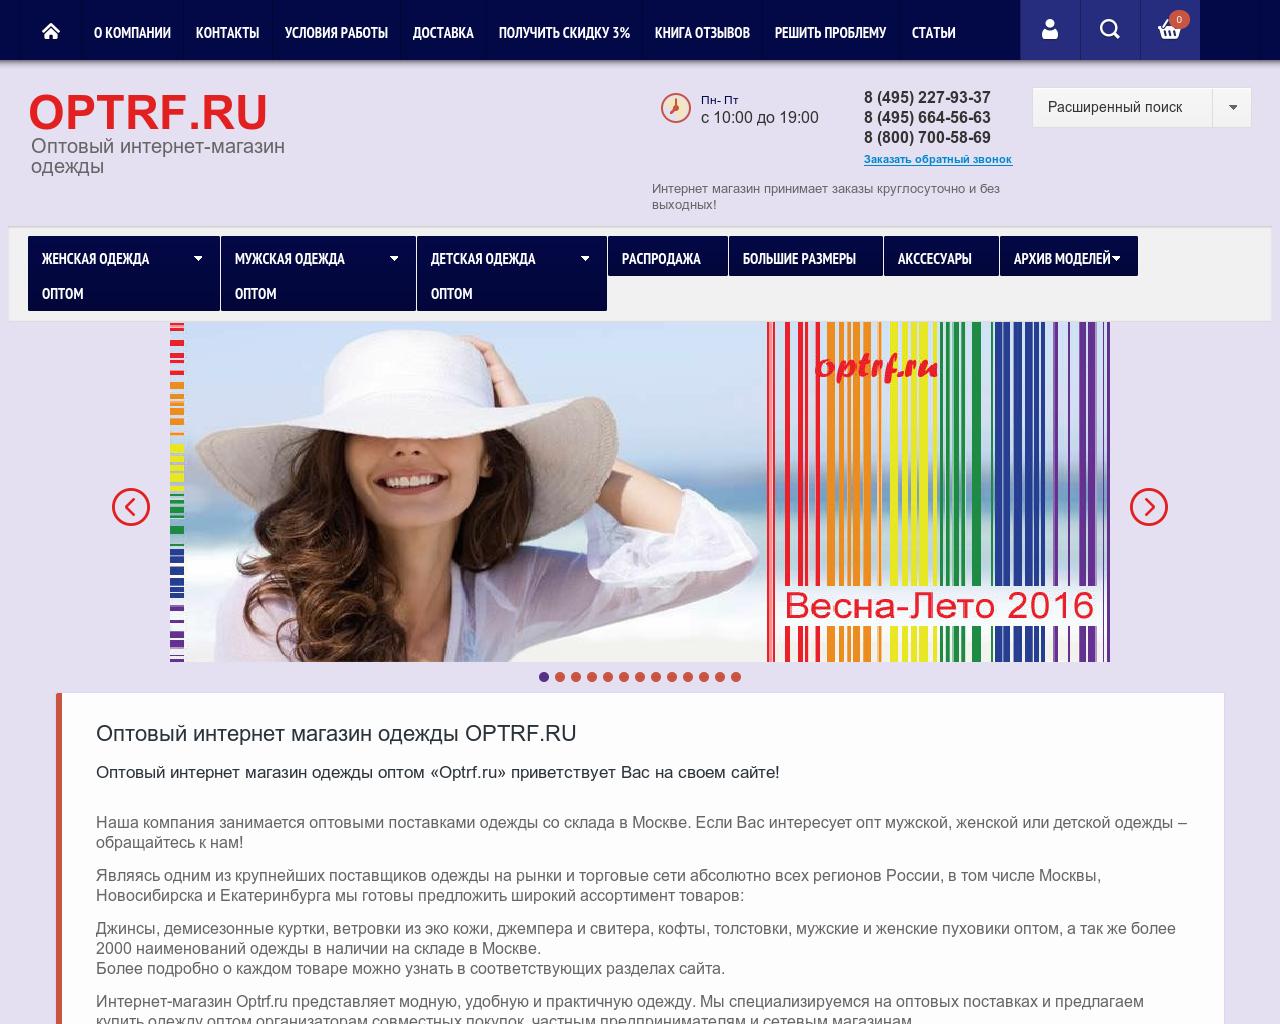 Сайт дешевле есть. Опт РФ. Optrf.ru оптовый интернет-магазин. Оптовый интернет магазин одежды отзывы. Каталог одежды оптовый шаблоны.